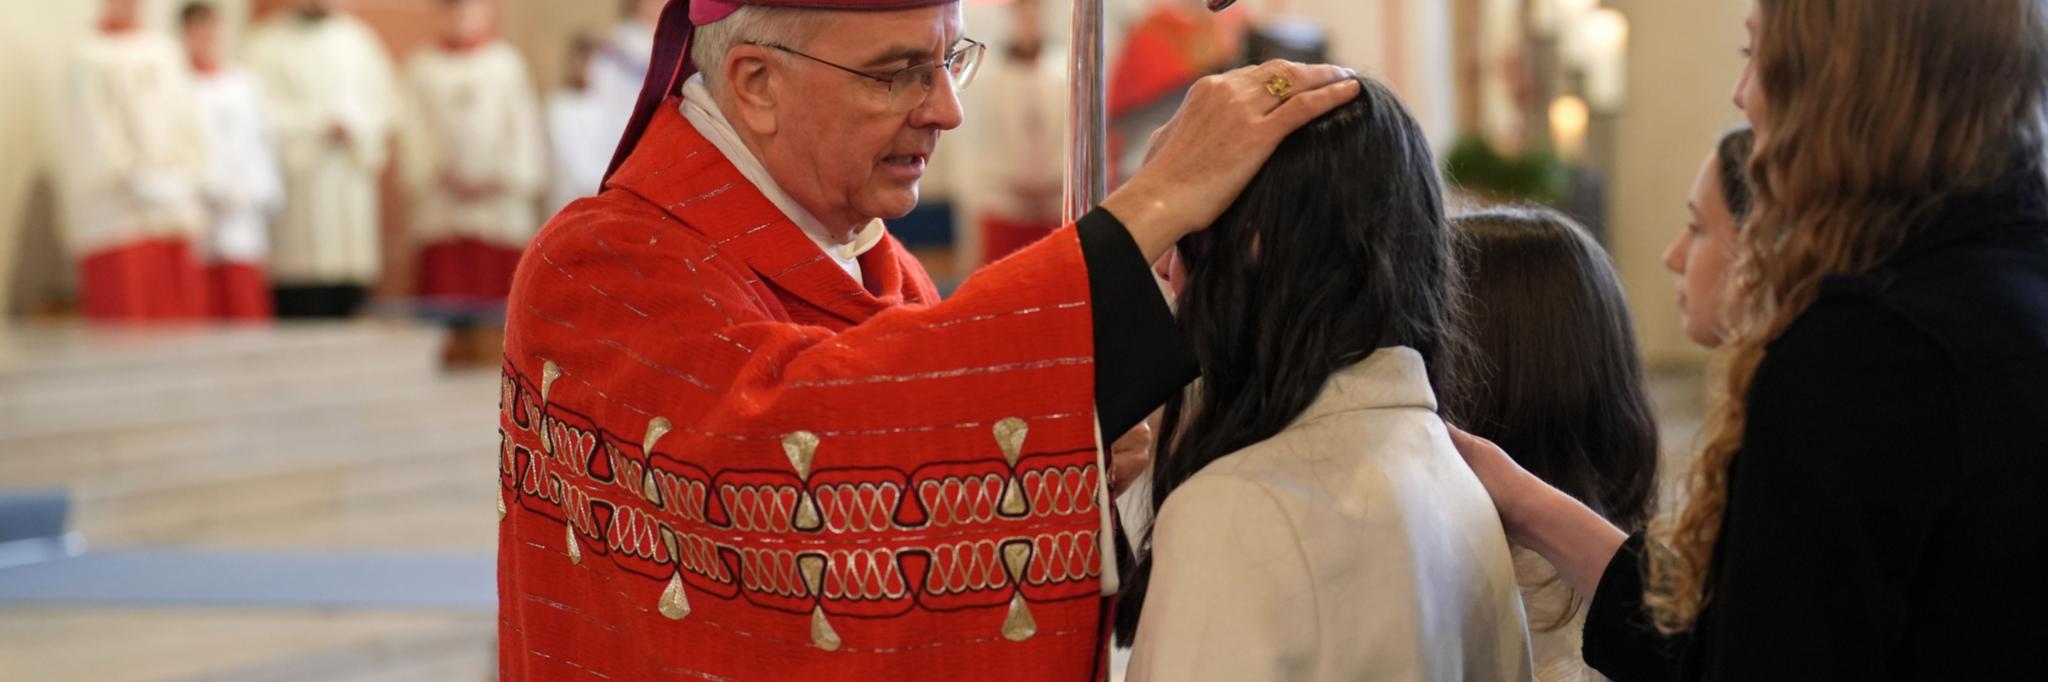 Weihbischof Peters legt einem jungen Menschen die Hand auf den Kopf.